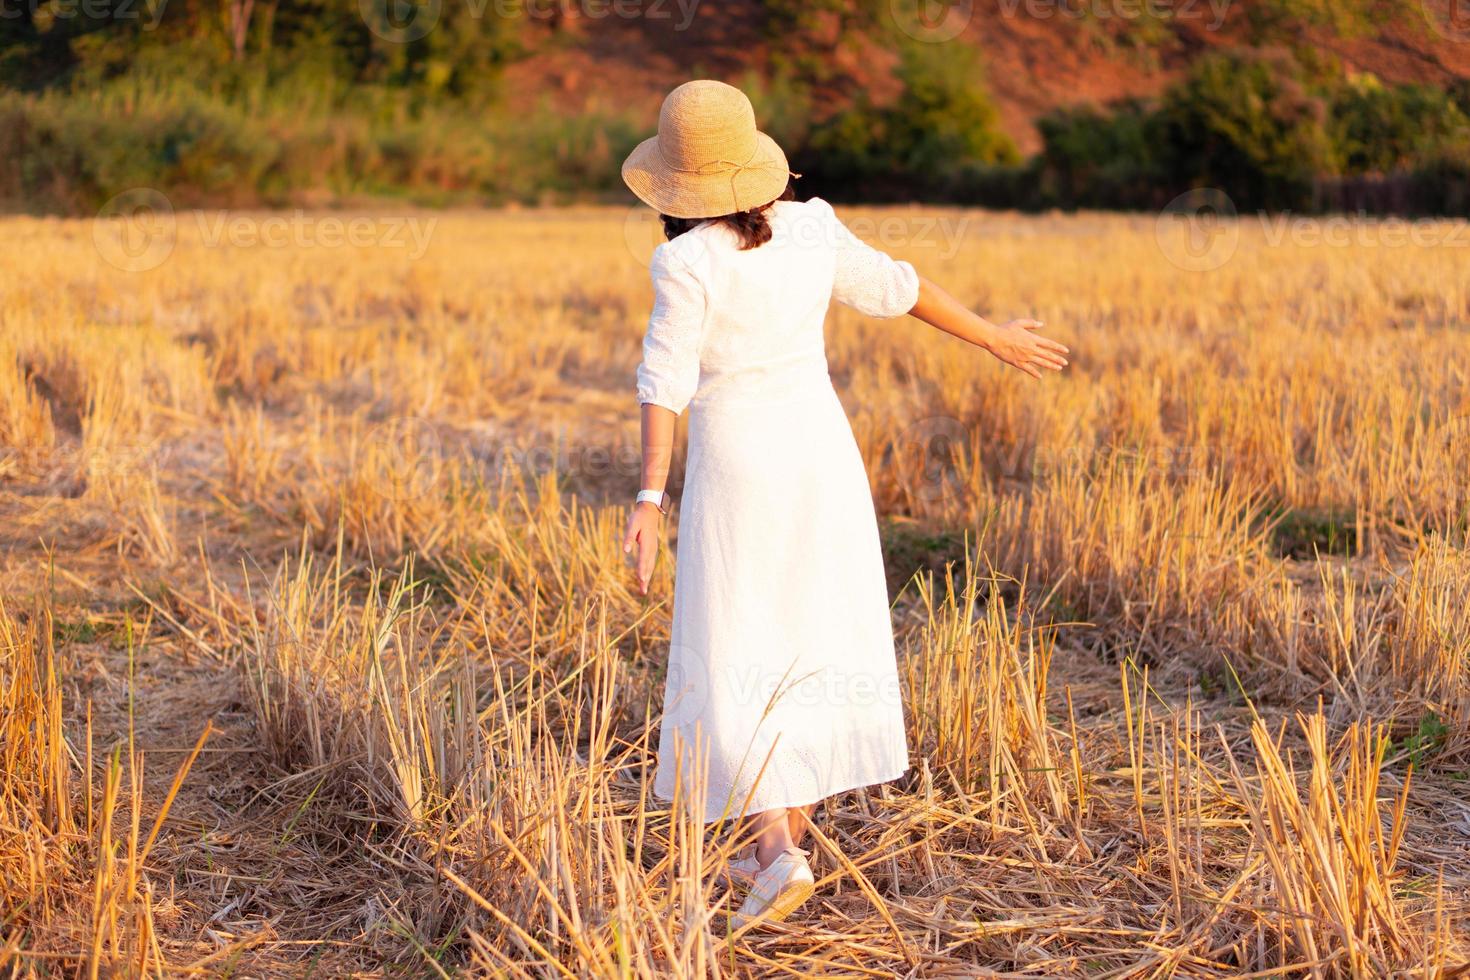 retrato, de, mujer joven, llevando, sombrero de paja, y, vestido blanco, ambulante, en, seco, arrozal, campo, en, ocaso foto